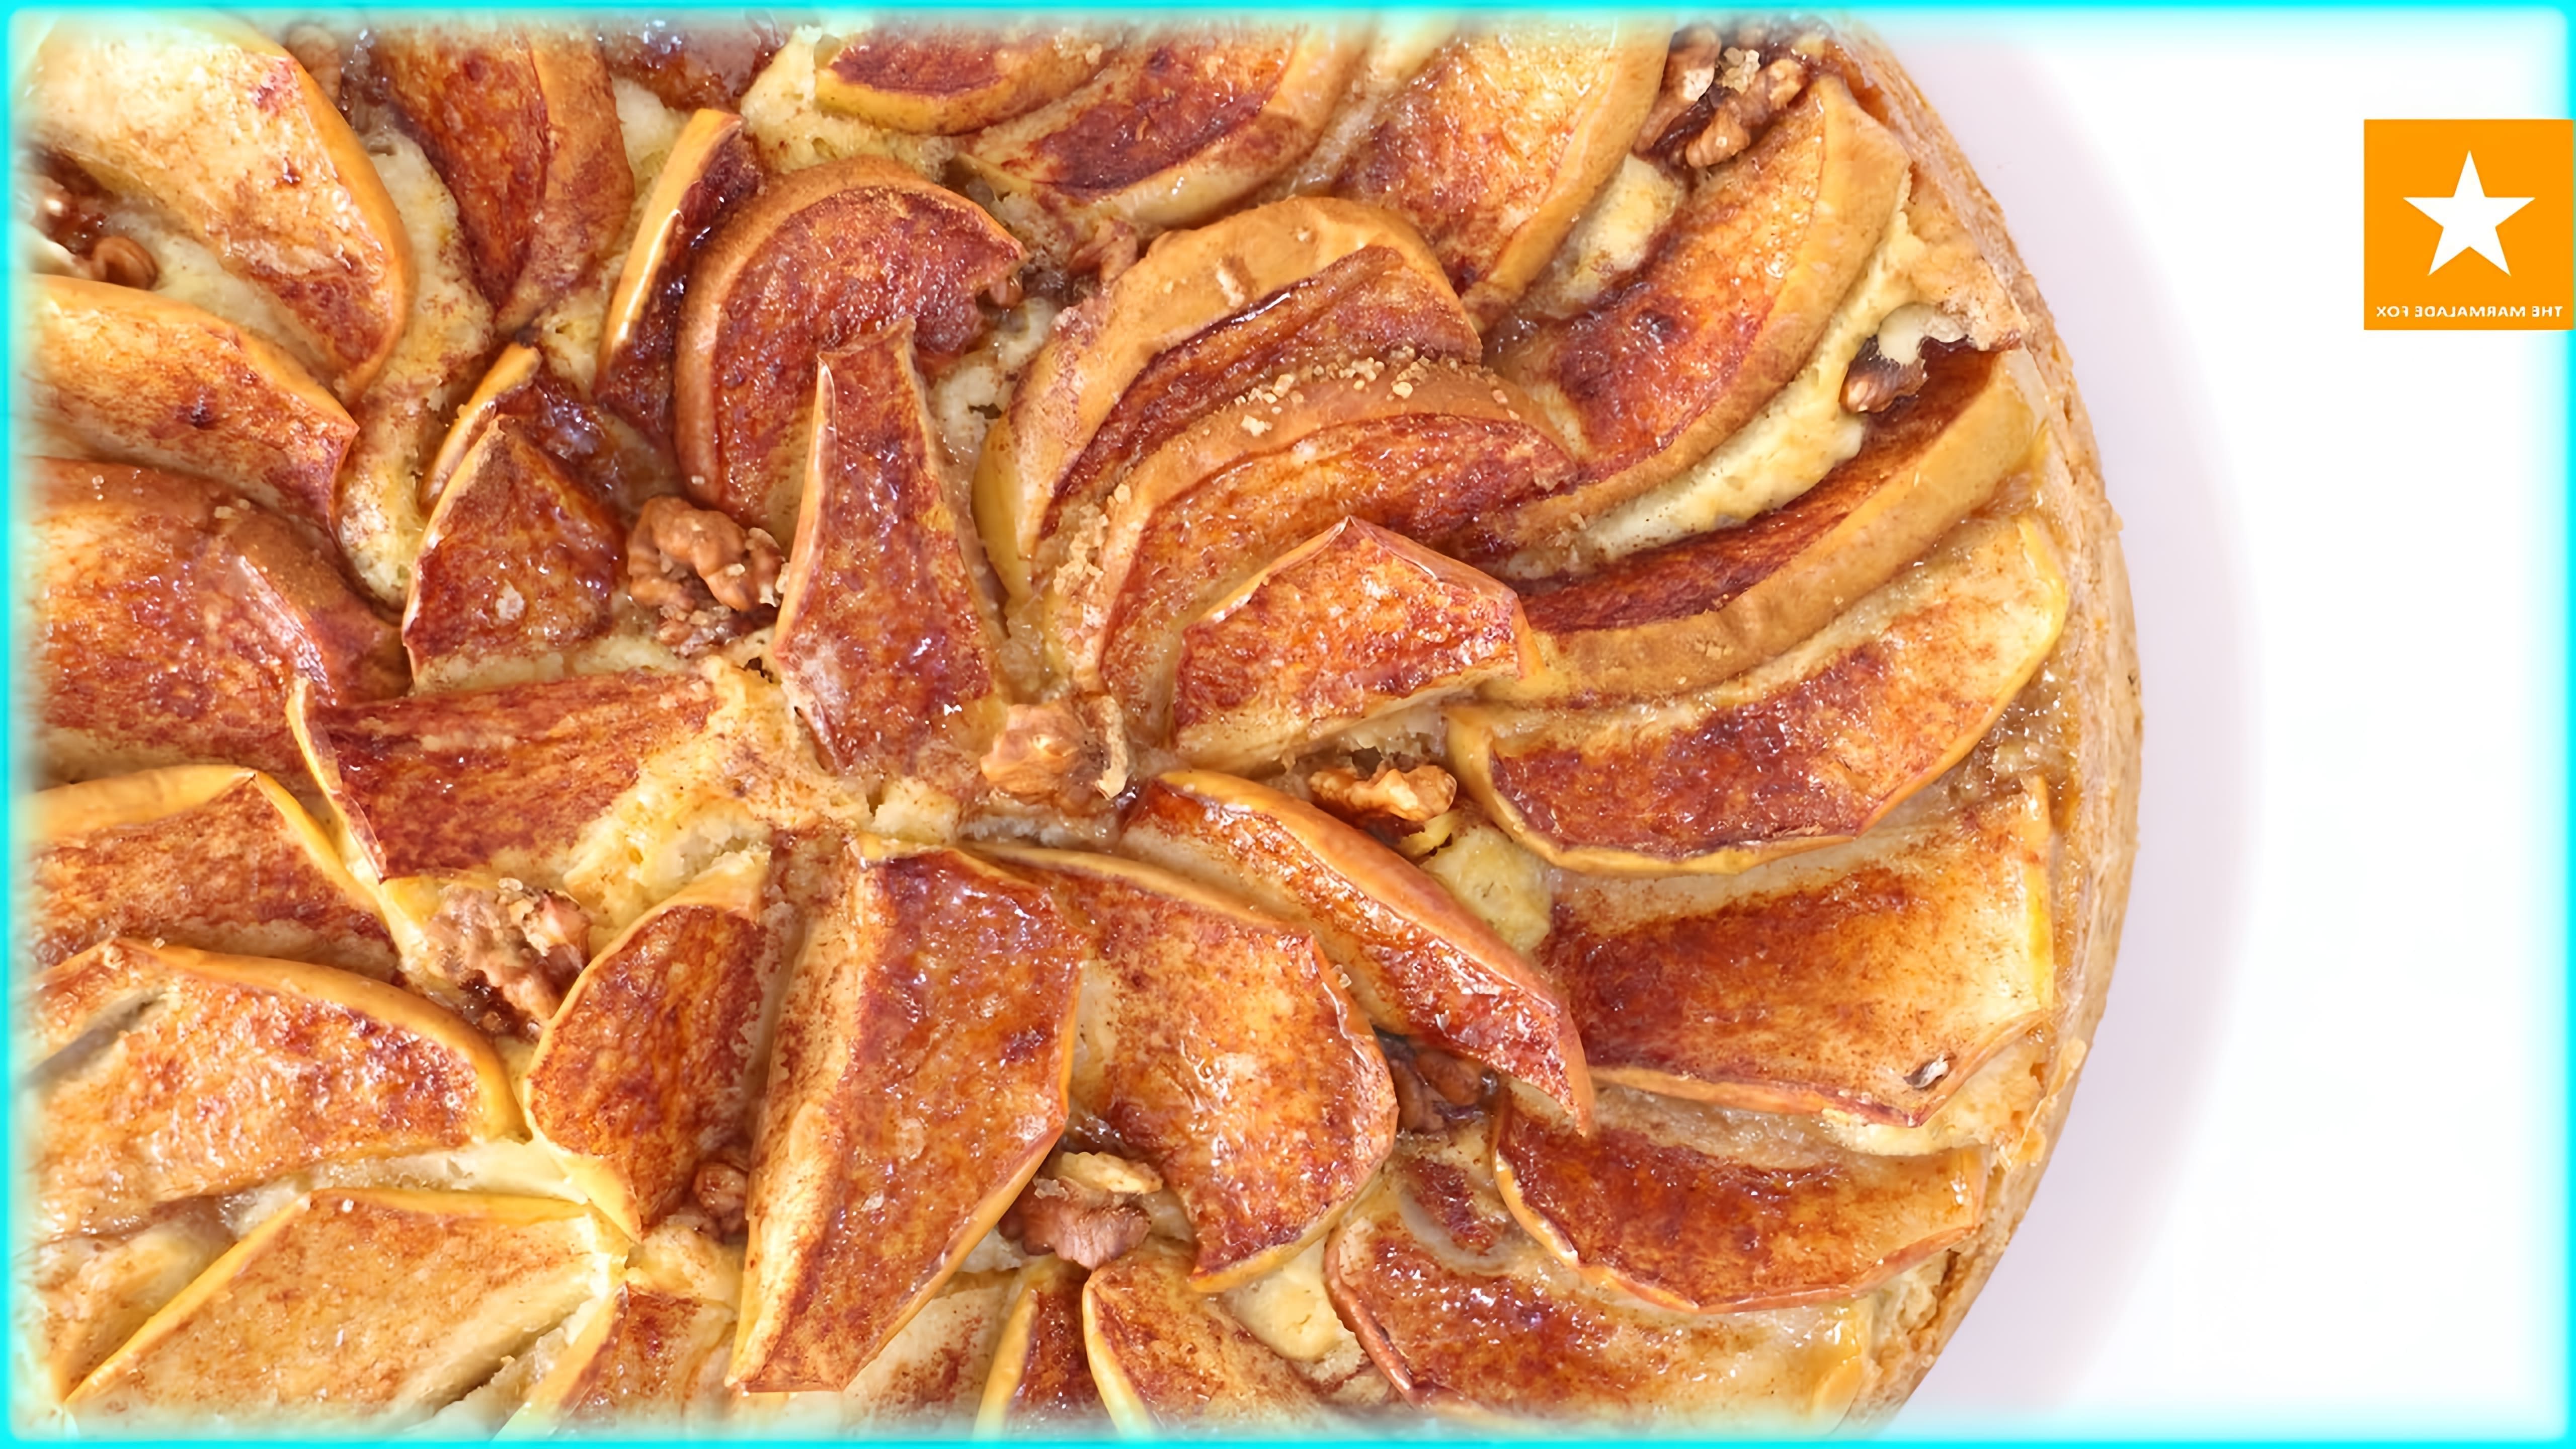 В этом видео демонстрируется рецепт яблочного пирога по бабушкиному рецепту